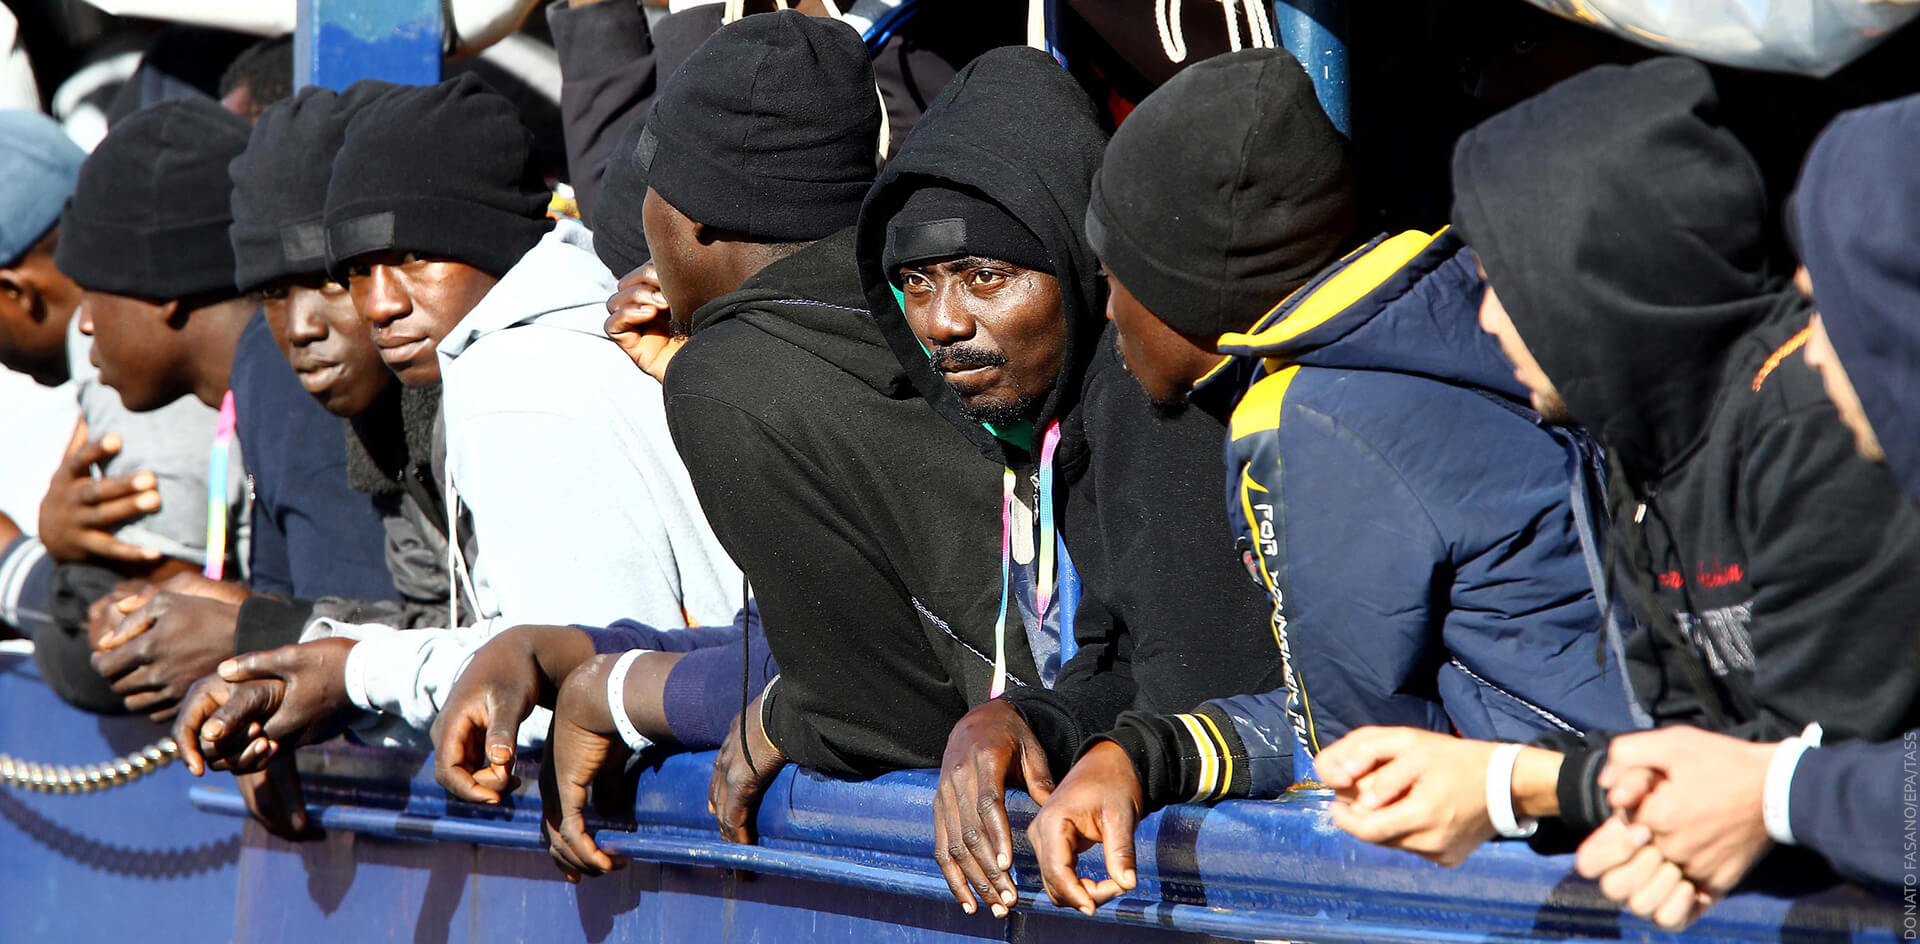 Италия объявляет режим ЧС и отправляет мигрантов домой